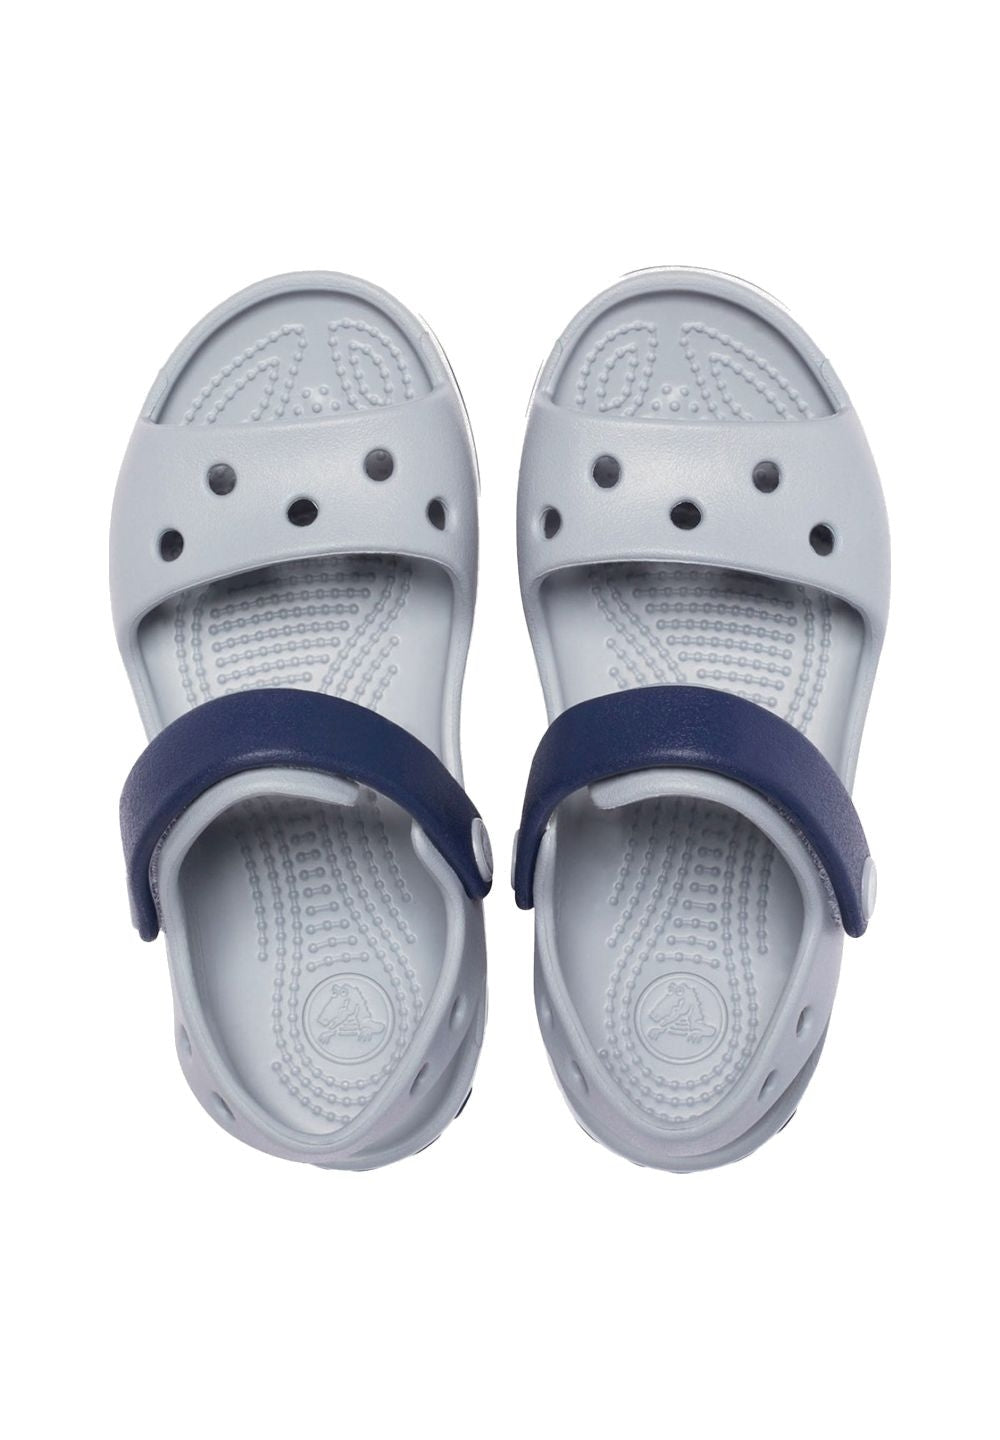 Sandalo grigio-blu per neonato - Primamoda kids